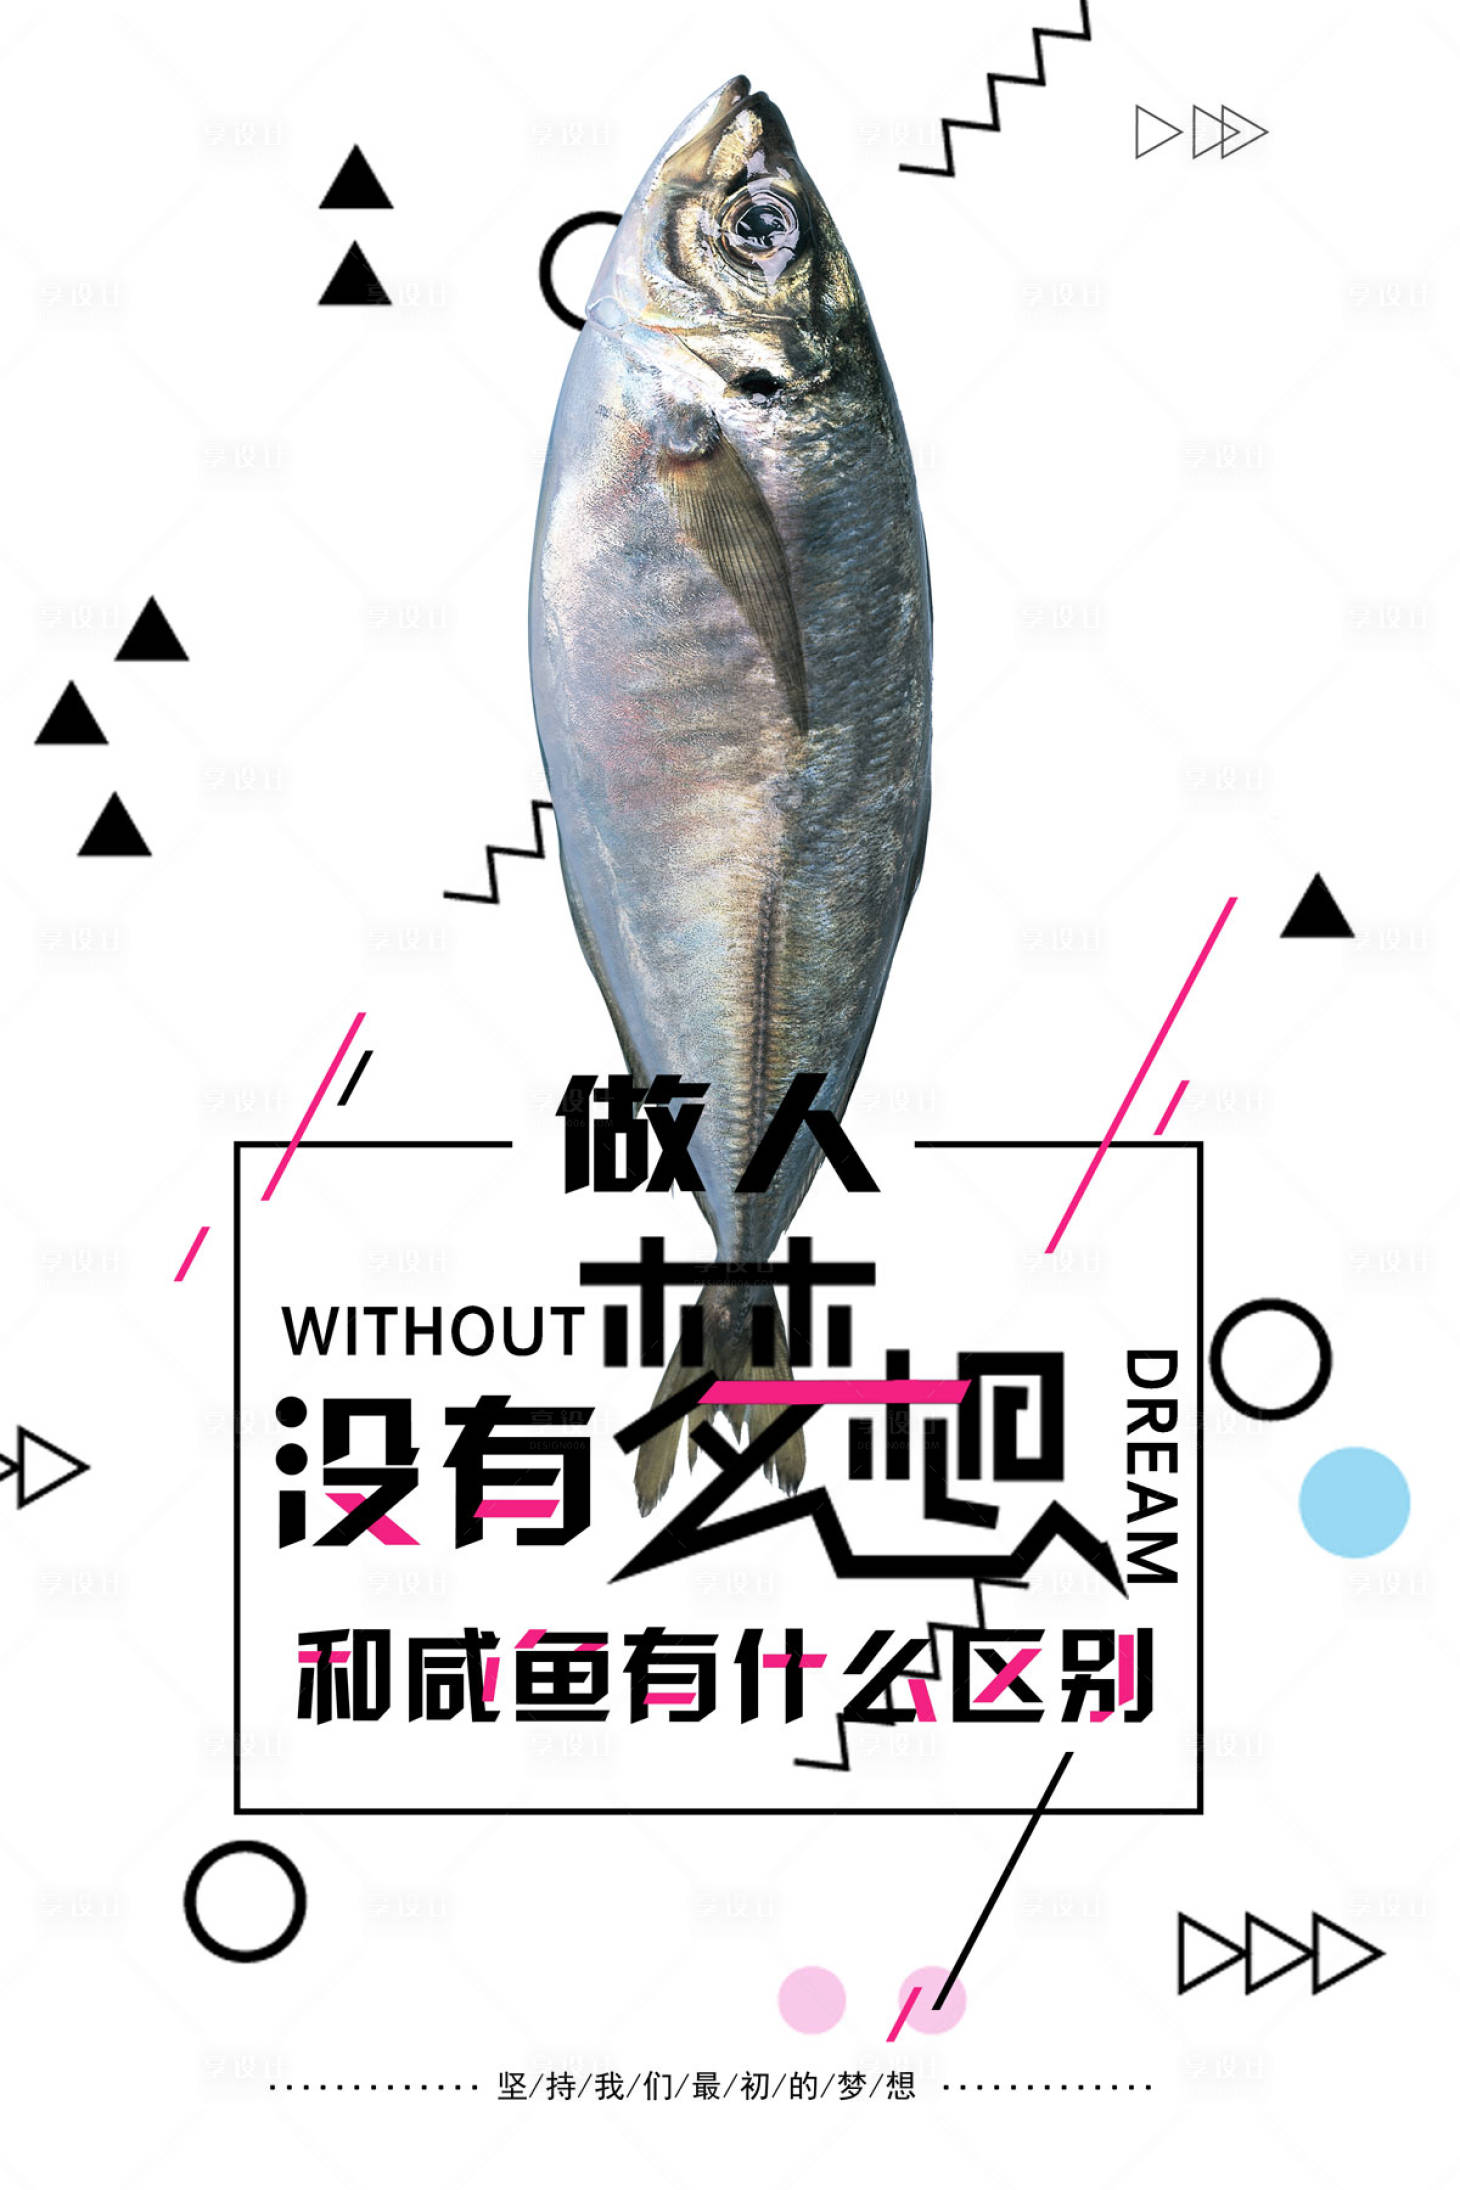 简约咸鱼梦想励志海报PSD广告设计素材海报模板免费下载-享设计